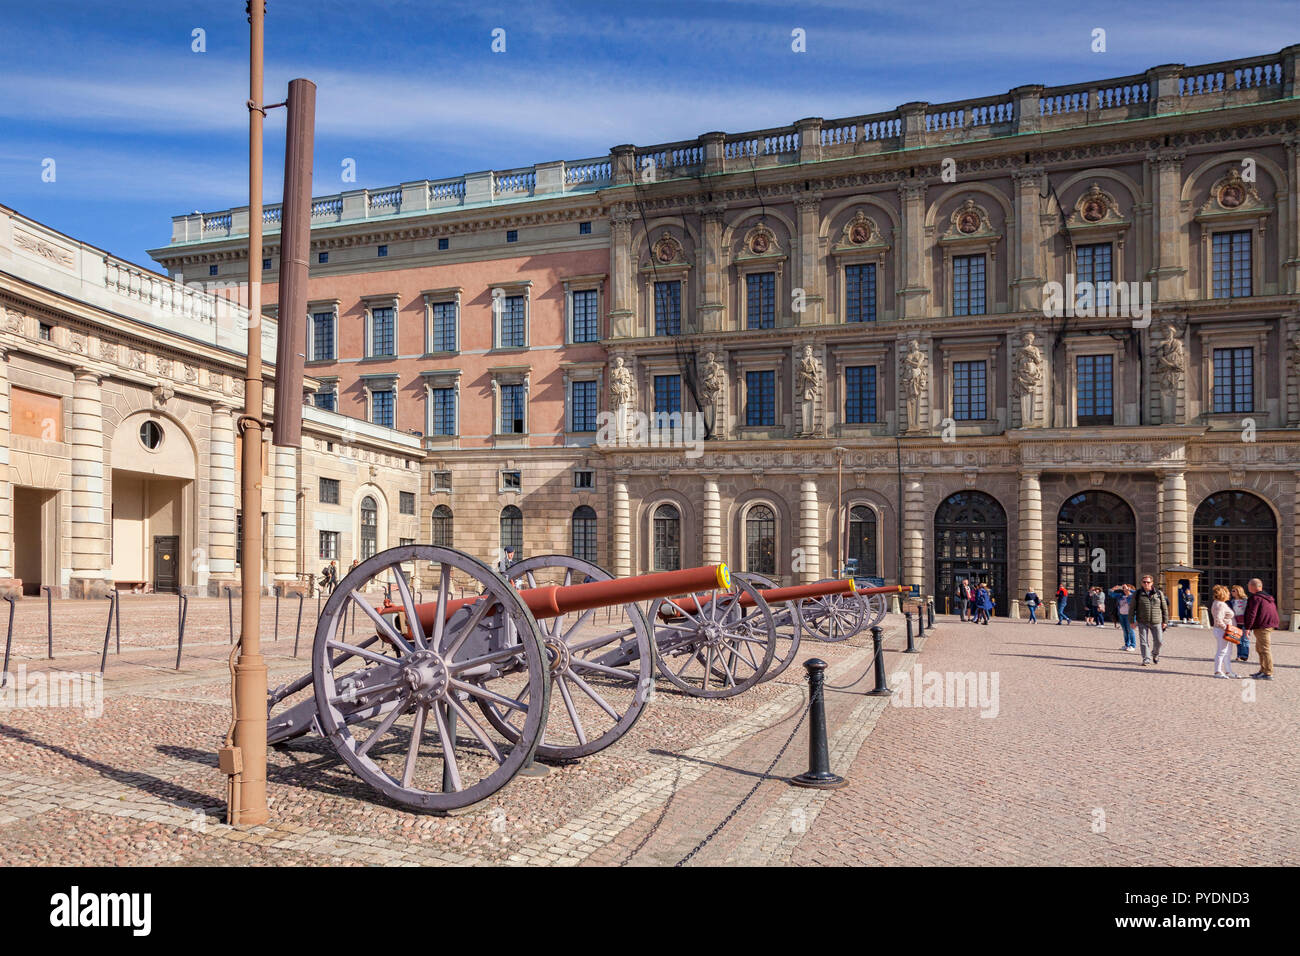 16 Septembre 2018 : Stockholm, Suède - Canons exposés au Palais Royal. Banque D'Images